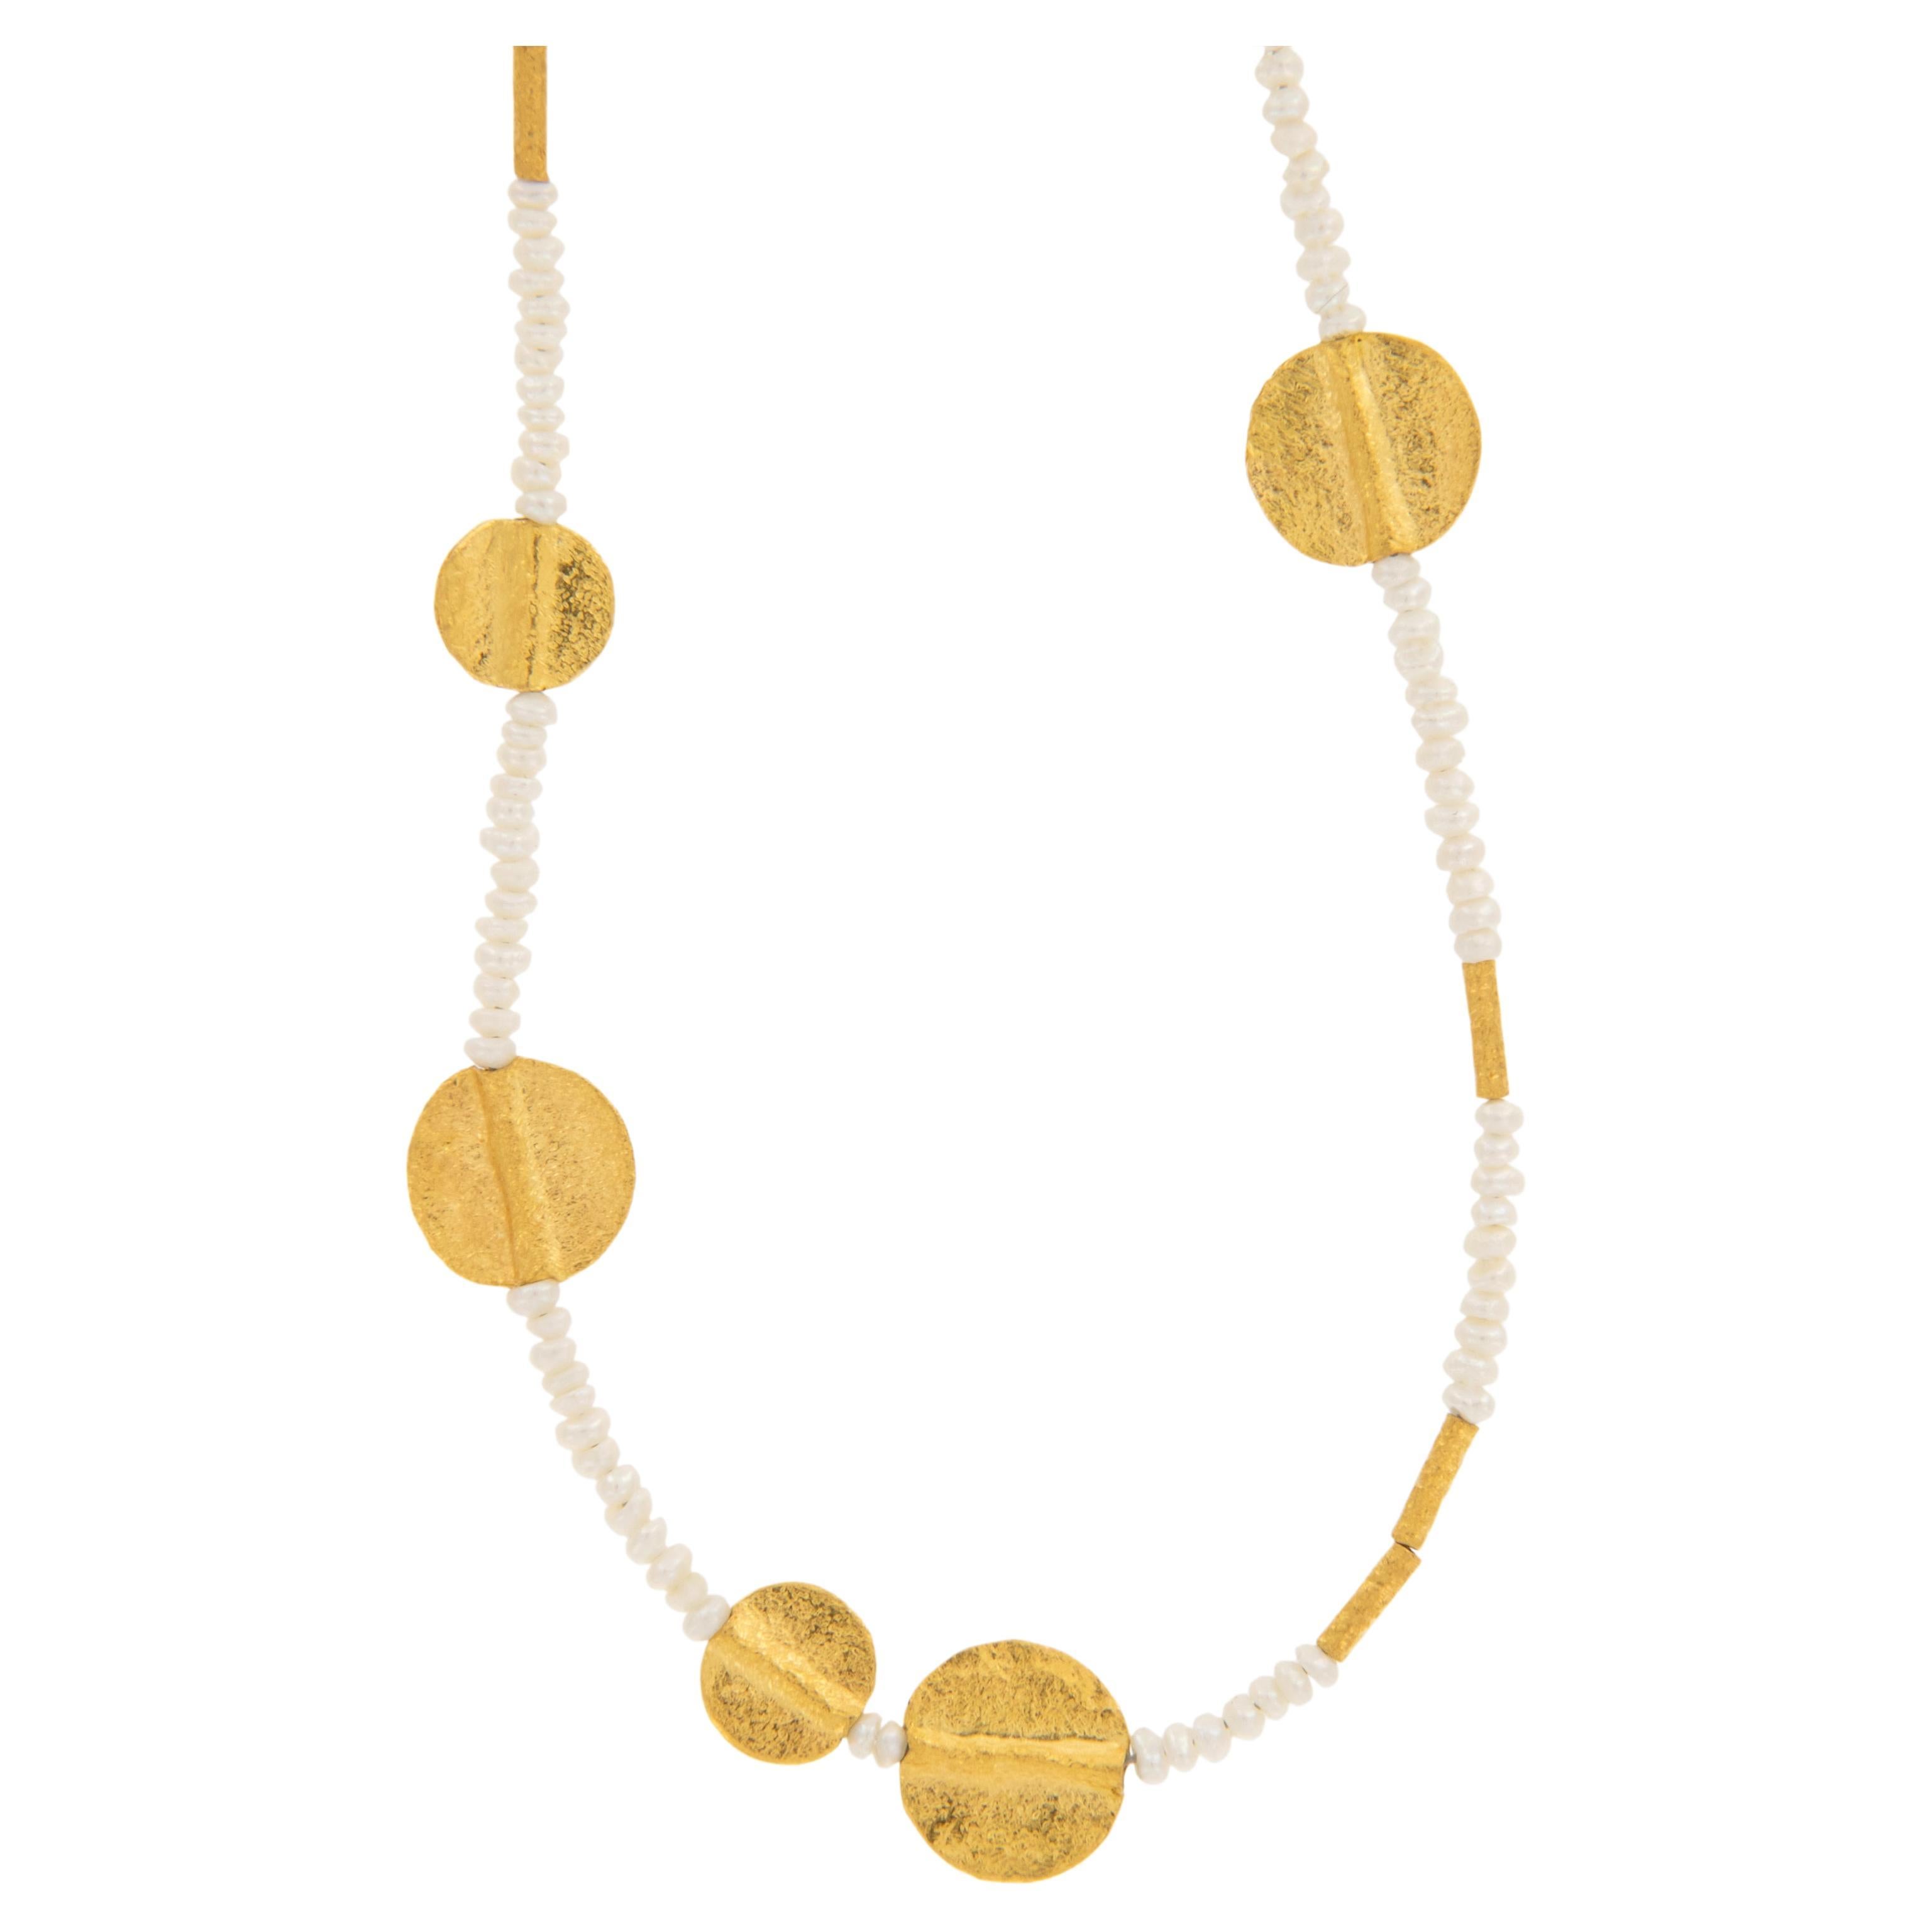 Seltene handgefertigte perlenbesetzte Halskette aus reinem 24 Karat Gelbgold und Saatperlen